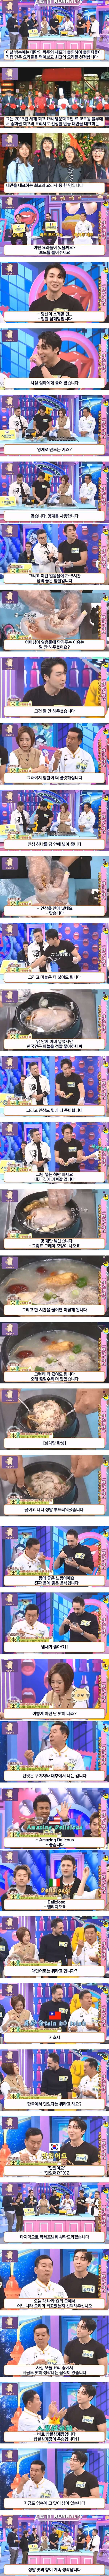 2 대만 요리 경연 방송에 출전한 삼계탕.jpg